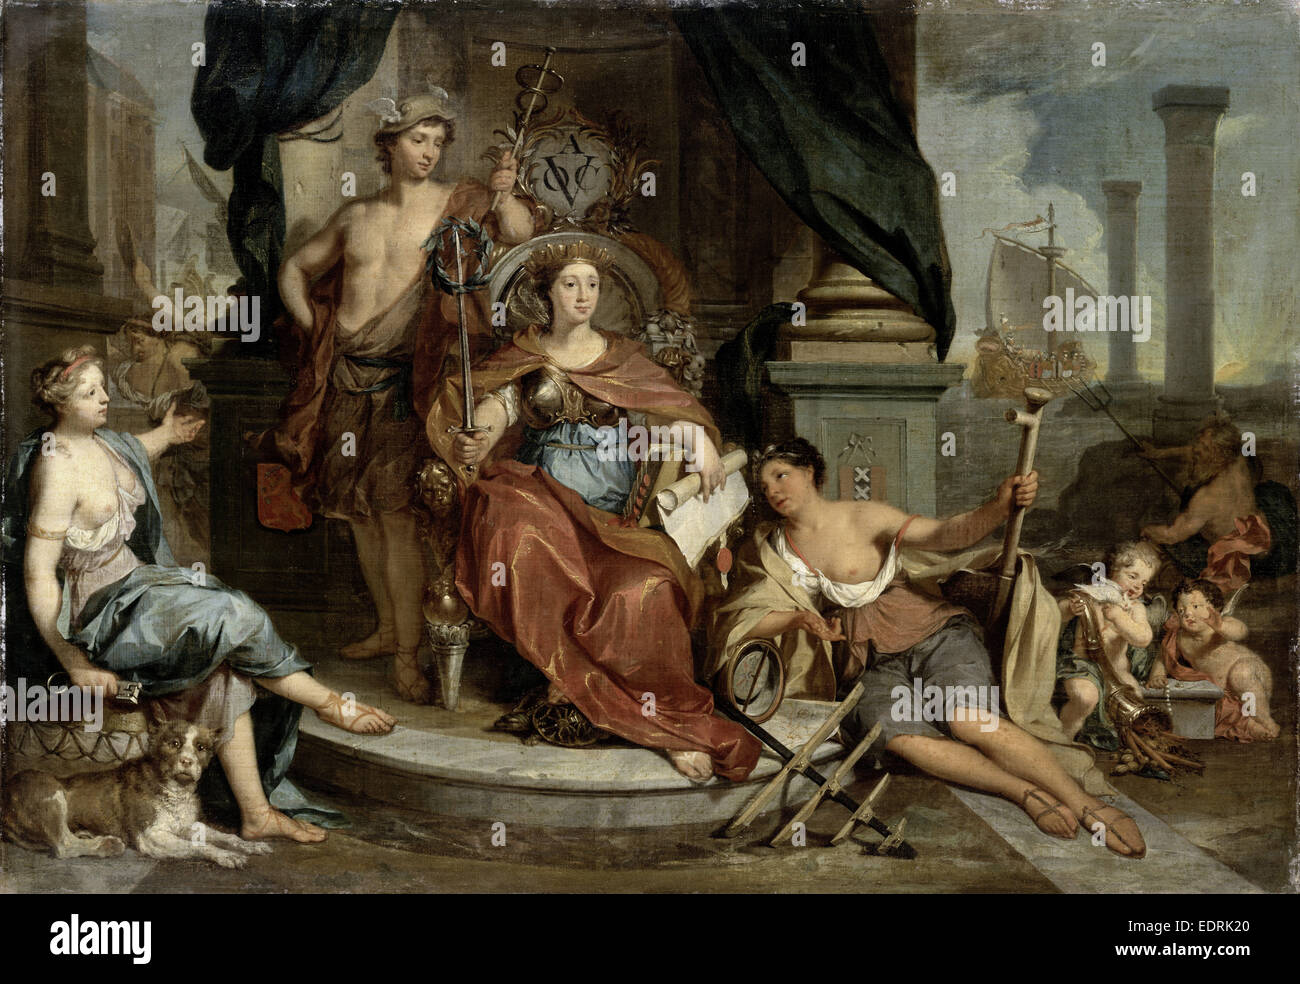 Apoteosis de la Dutch East India Company, alegoría de la Cámara de Comercio de Ámsterdam de la VOC, Nicolaas Verkolje Foto de stock